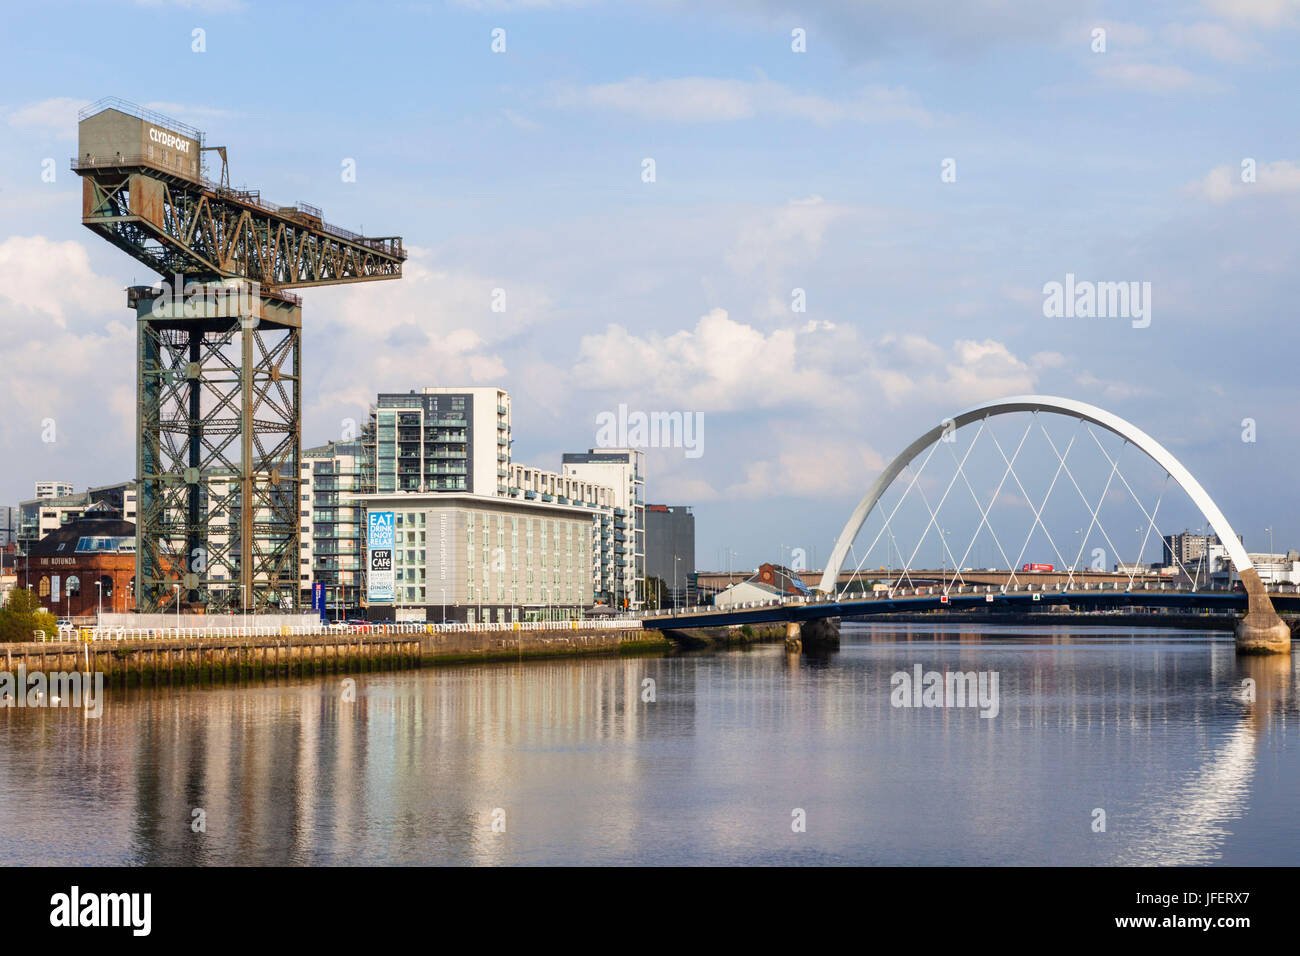 Schottland, Glasgow, Clydebank, Finnieston Kran und Clyde Arc Brücke Stockfoto